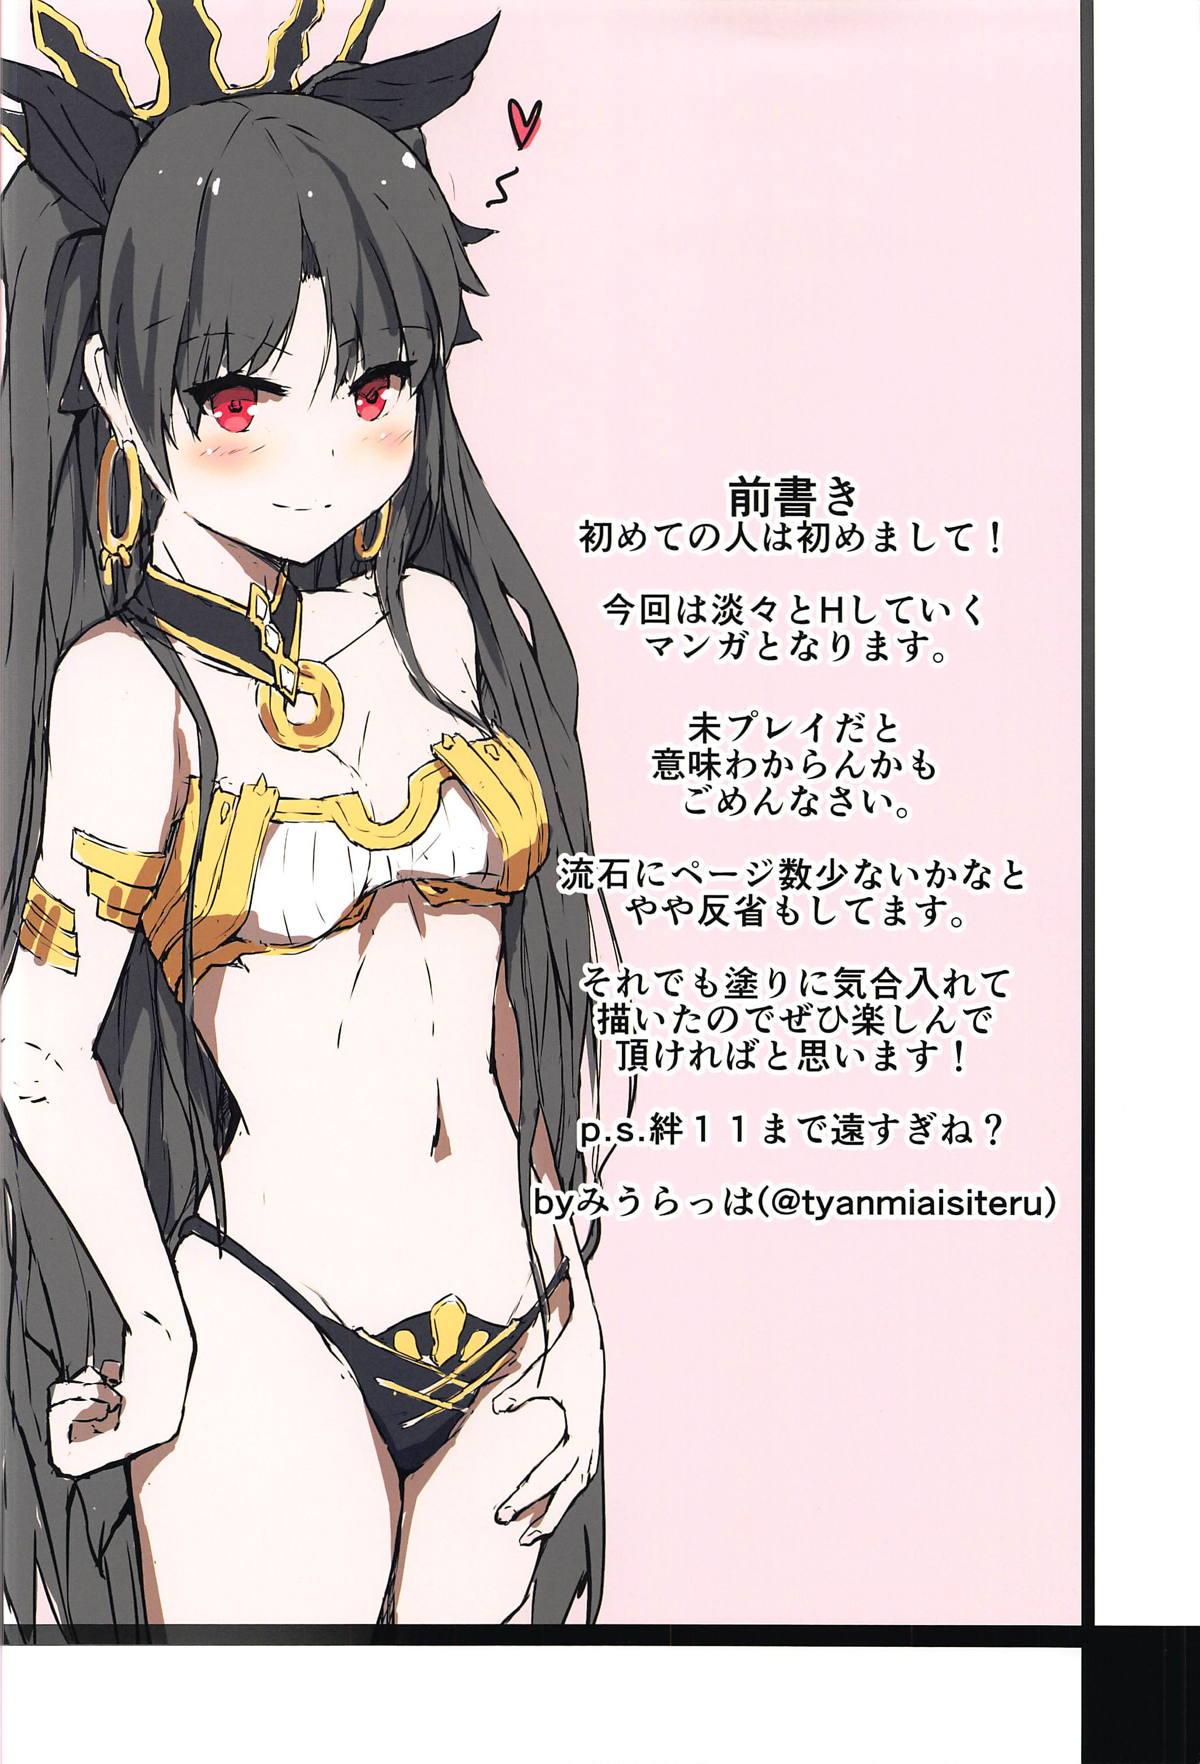 Celebrity Kakusareta Seiheki of I/E - Fate grand order Nudity - Page 2